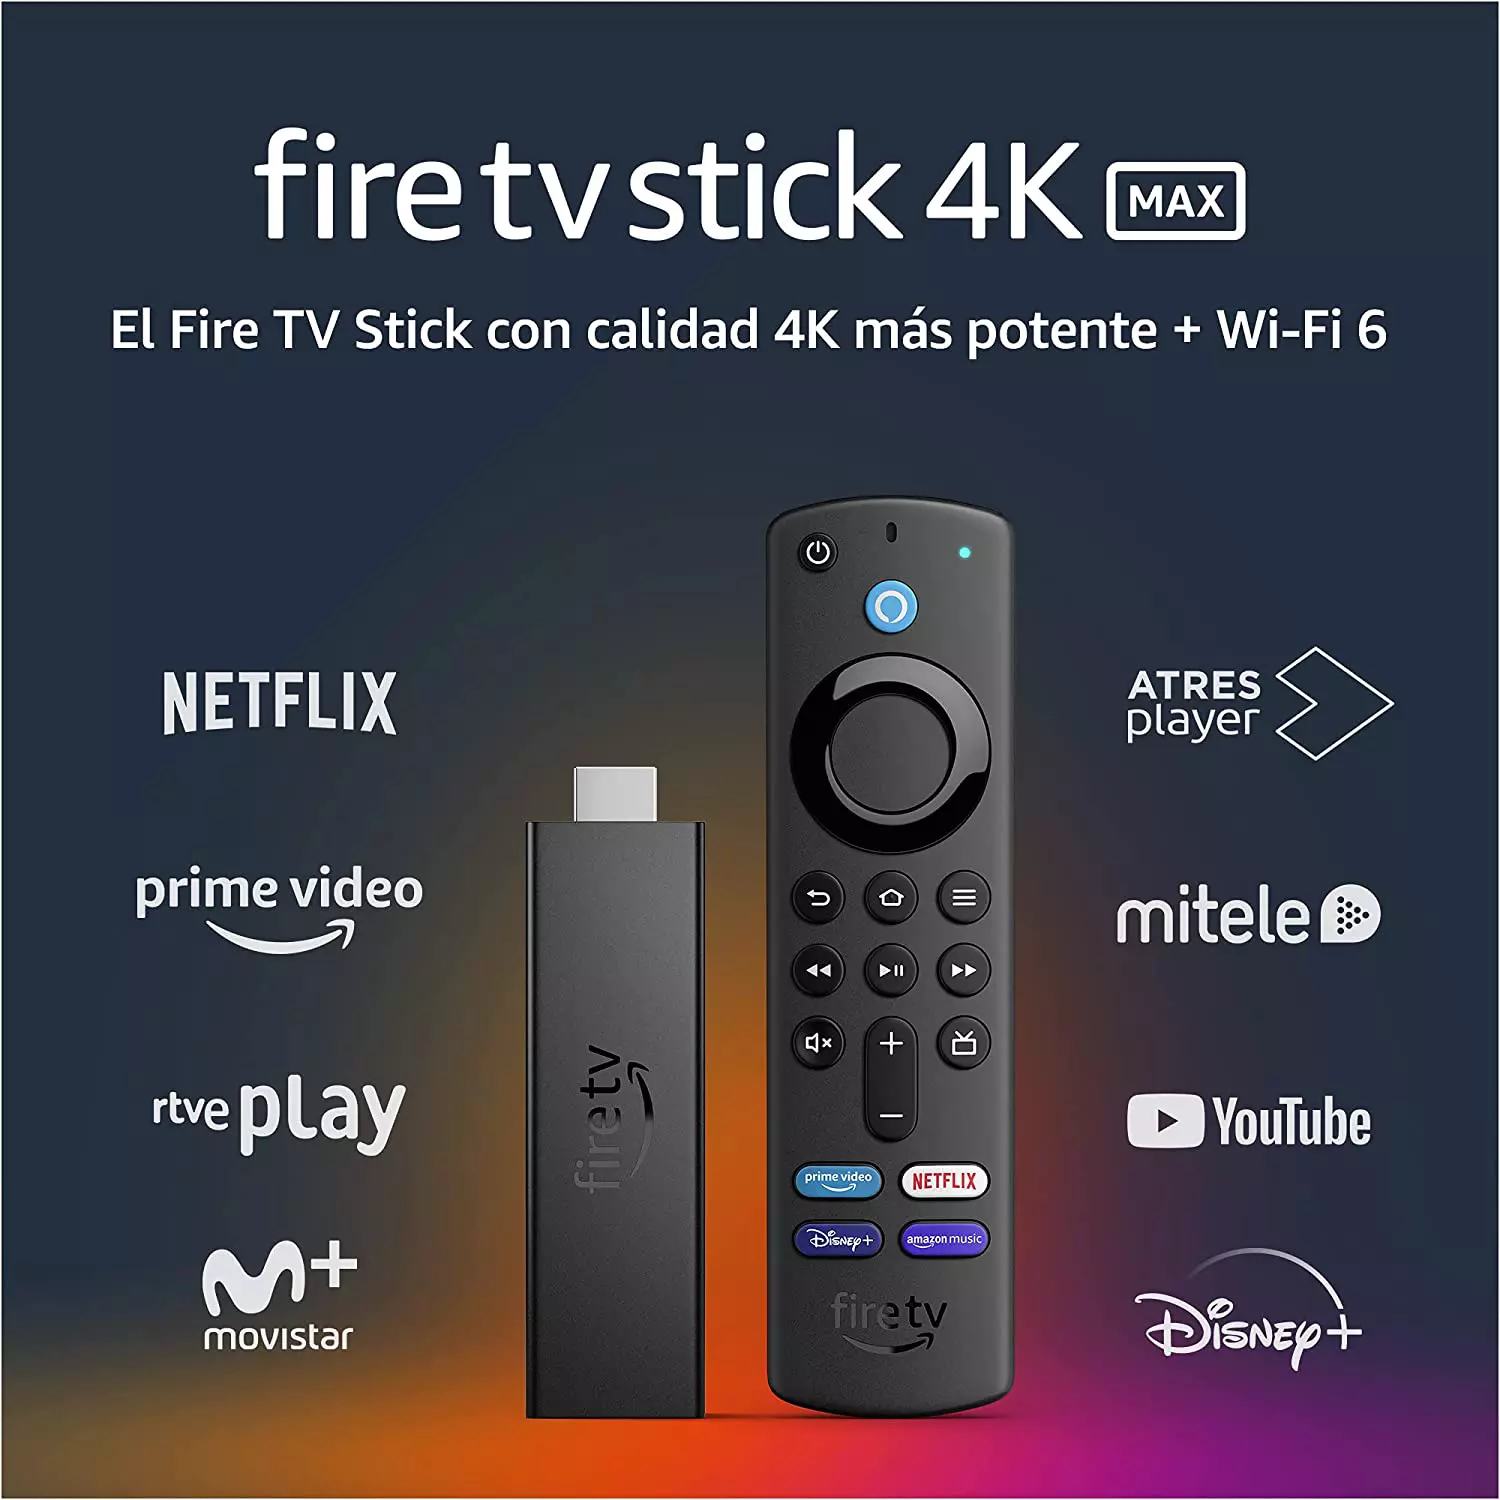 Fire TV Stick 4K Max con Wi-Fi 6 y mando por voz Alexa (incluye controles para el televisor) - Promo